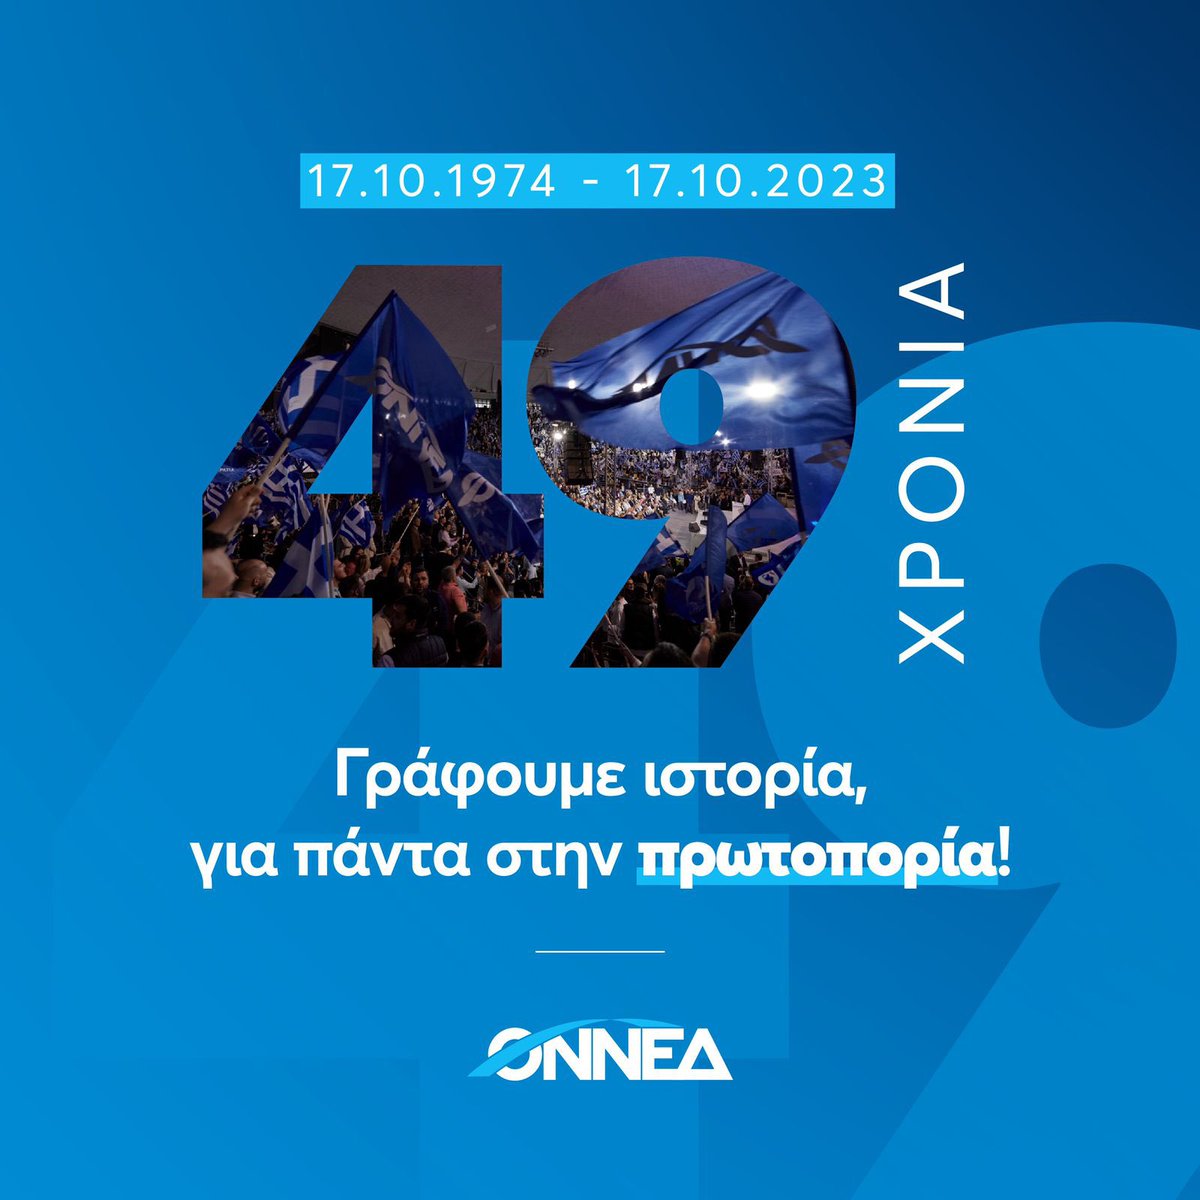 Σήμερα, γιορτάζουμε την 49η επέτειο από την ίδρυση της @ONNED. Της Οργάνωσης που από το 1974 έως σήμερα, έχει διαγράψει μια εντυπωσιακή πορεία, με βασική πυξίδα την προσφορά στην πατρίδα και τον άνθρωπο. Έχουμε όραμα για την Ελλάδα που αξίζουμε, παρέχοντας ιδέες, προτάσεις και